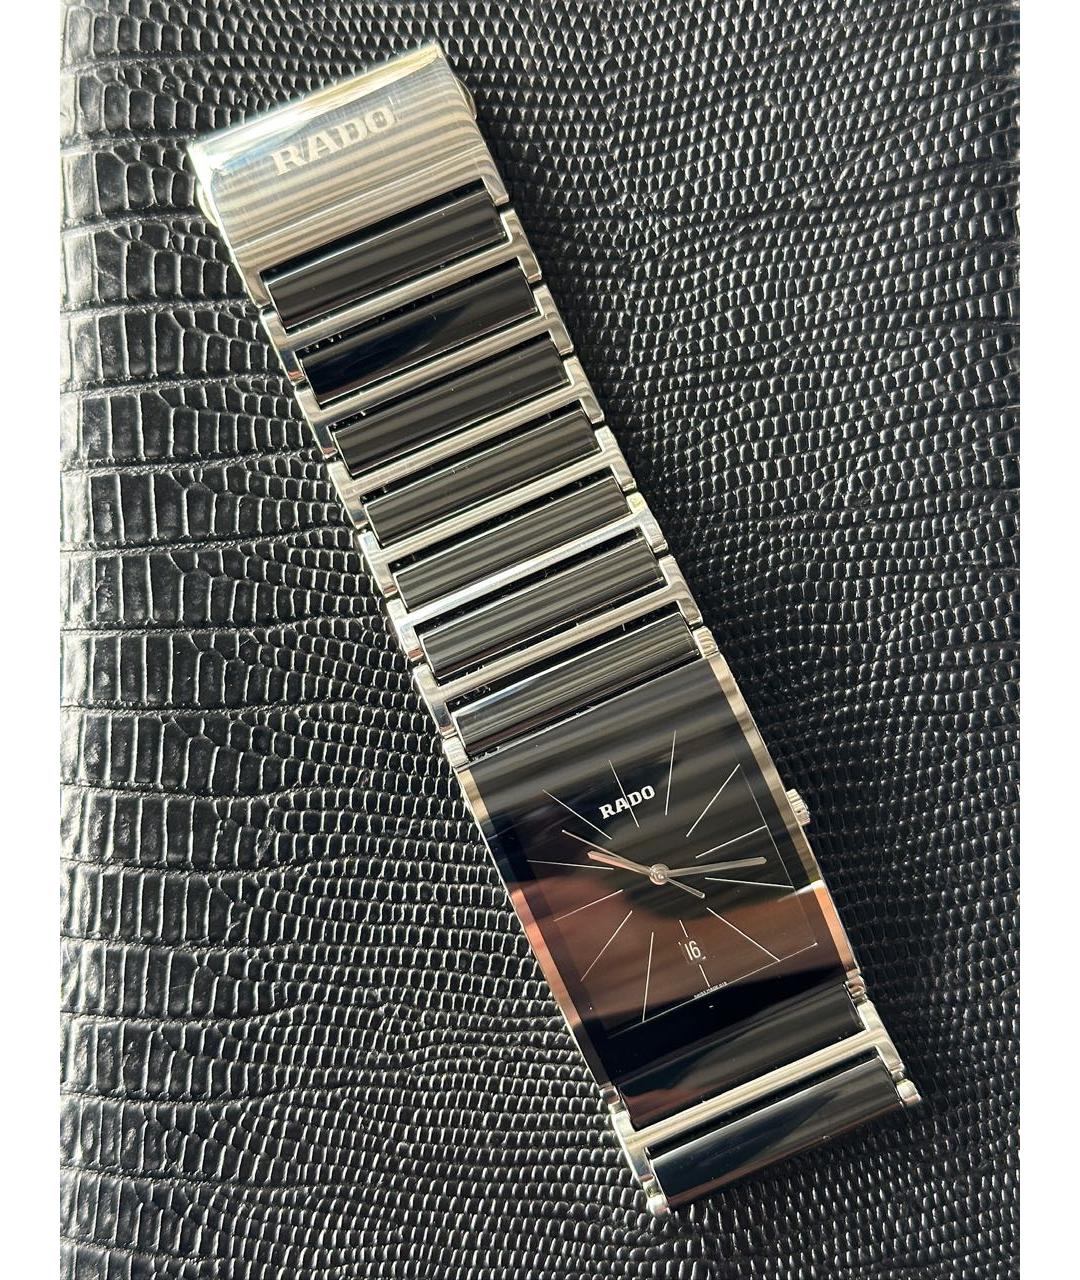 RADO Черные стальные часы, фото 4